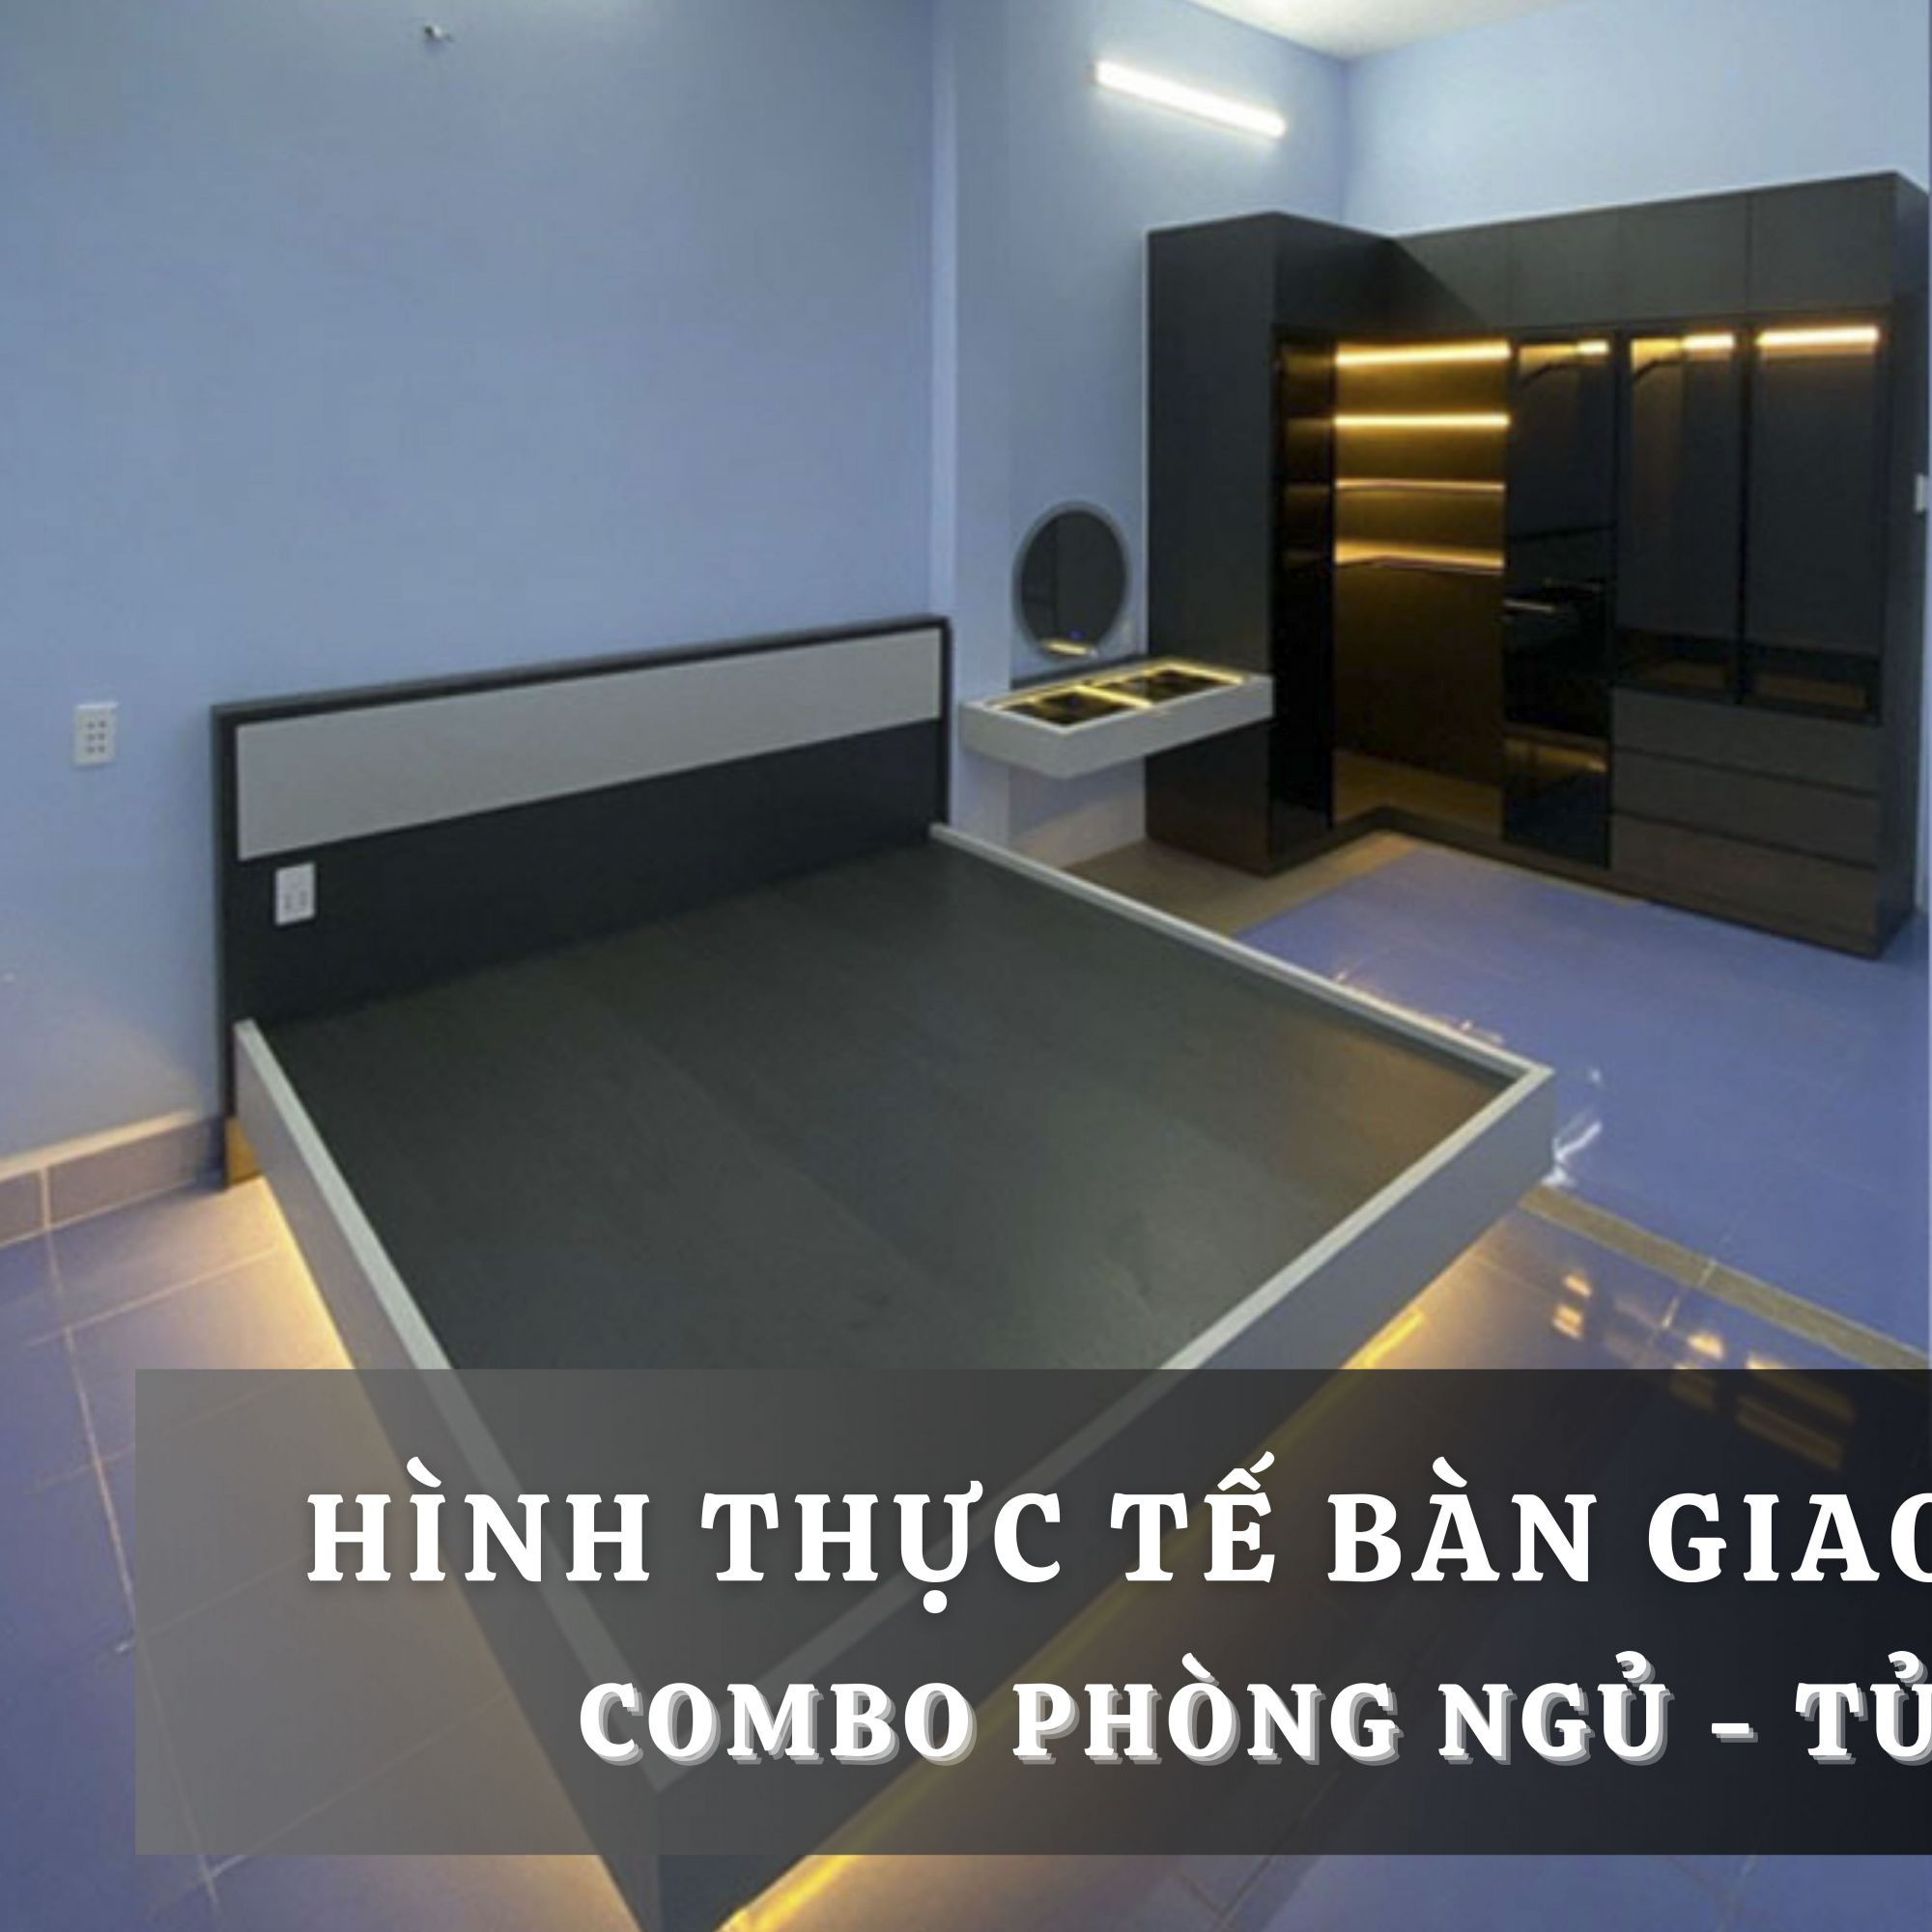 BÀN GIAO COMBO PHÒNG NGỦ